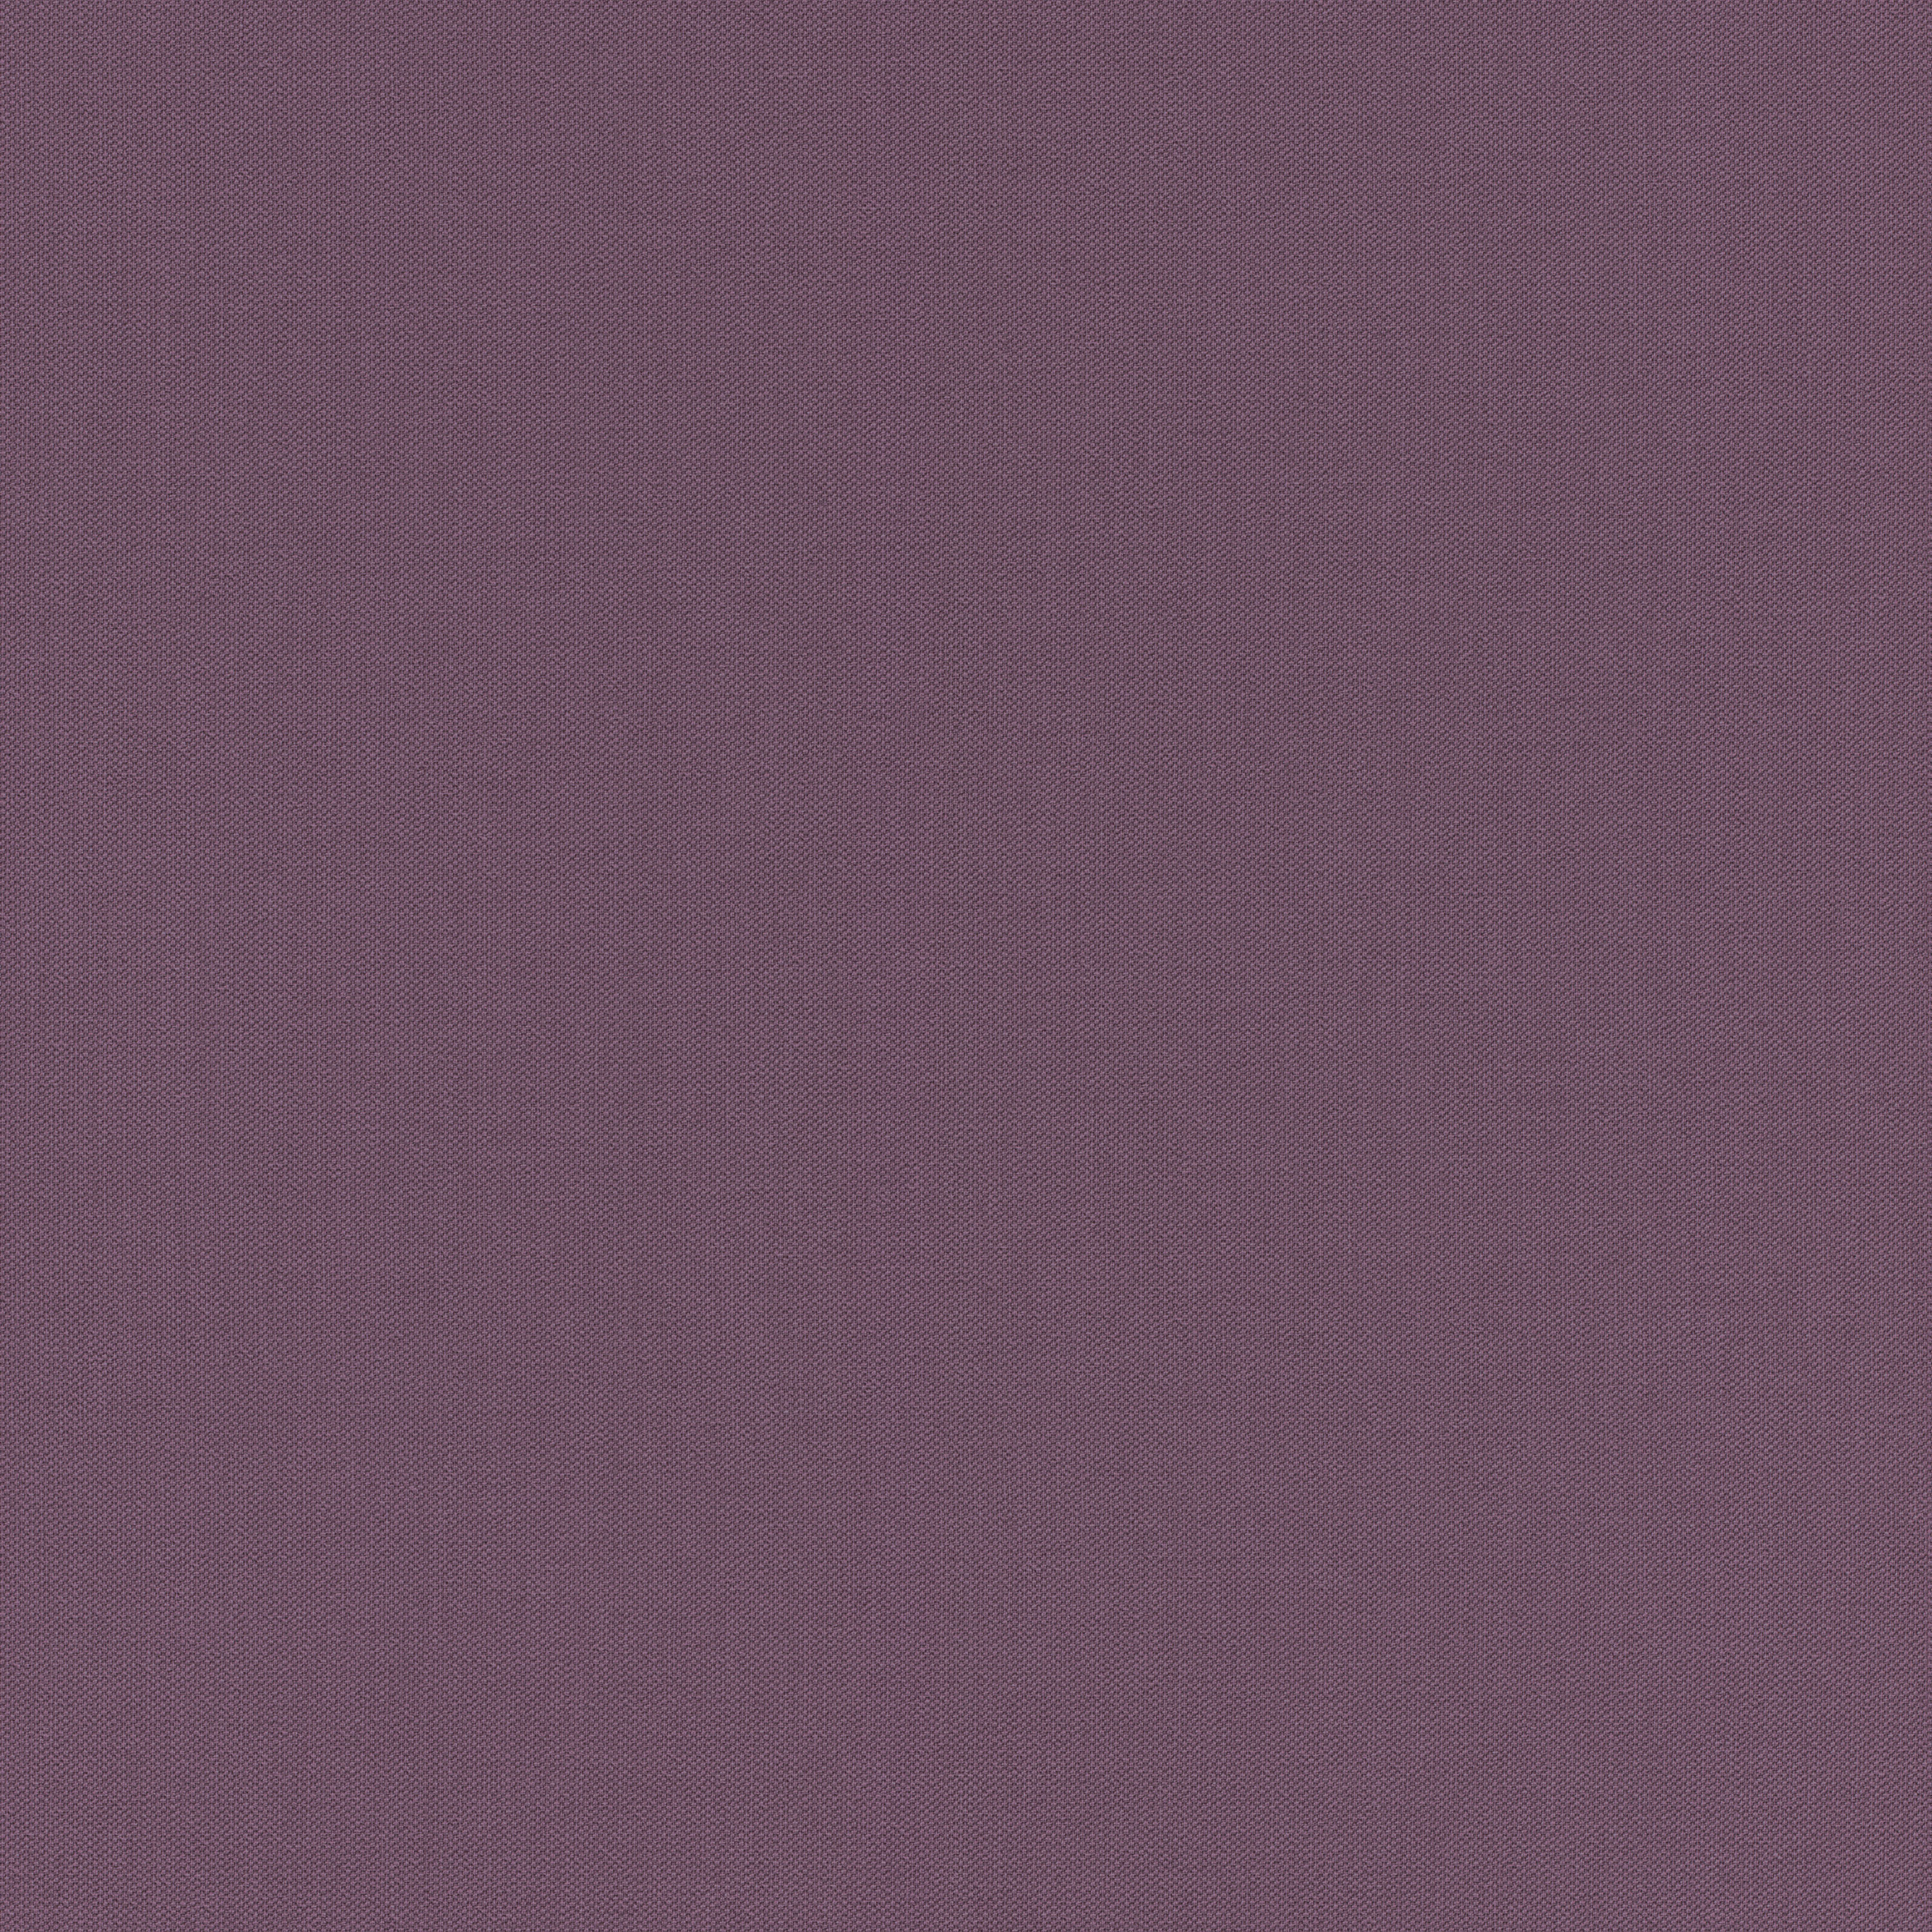 紫色素色壁紙rasch 德國壁紙 壁紙屋本舖 Rakuten樂天市場